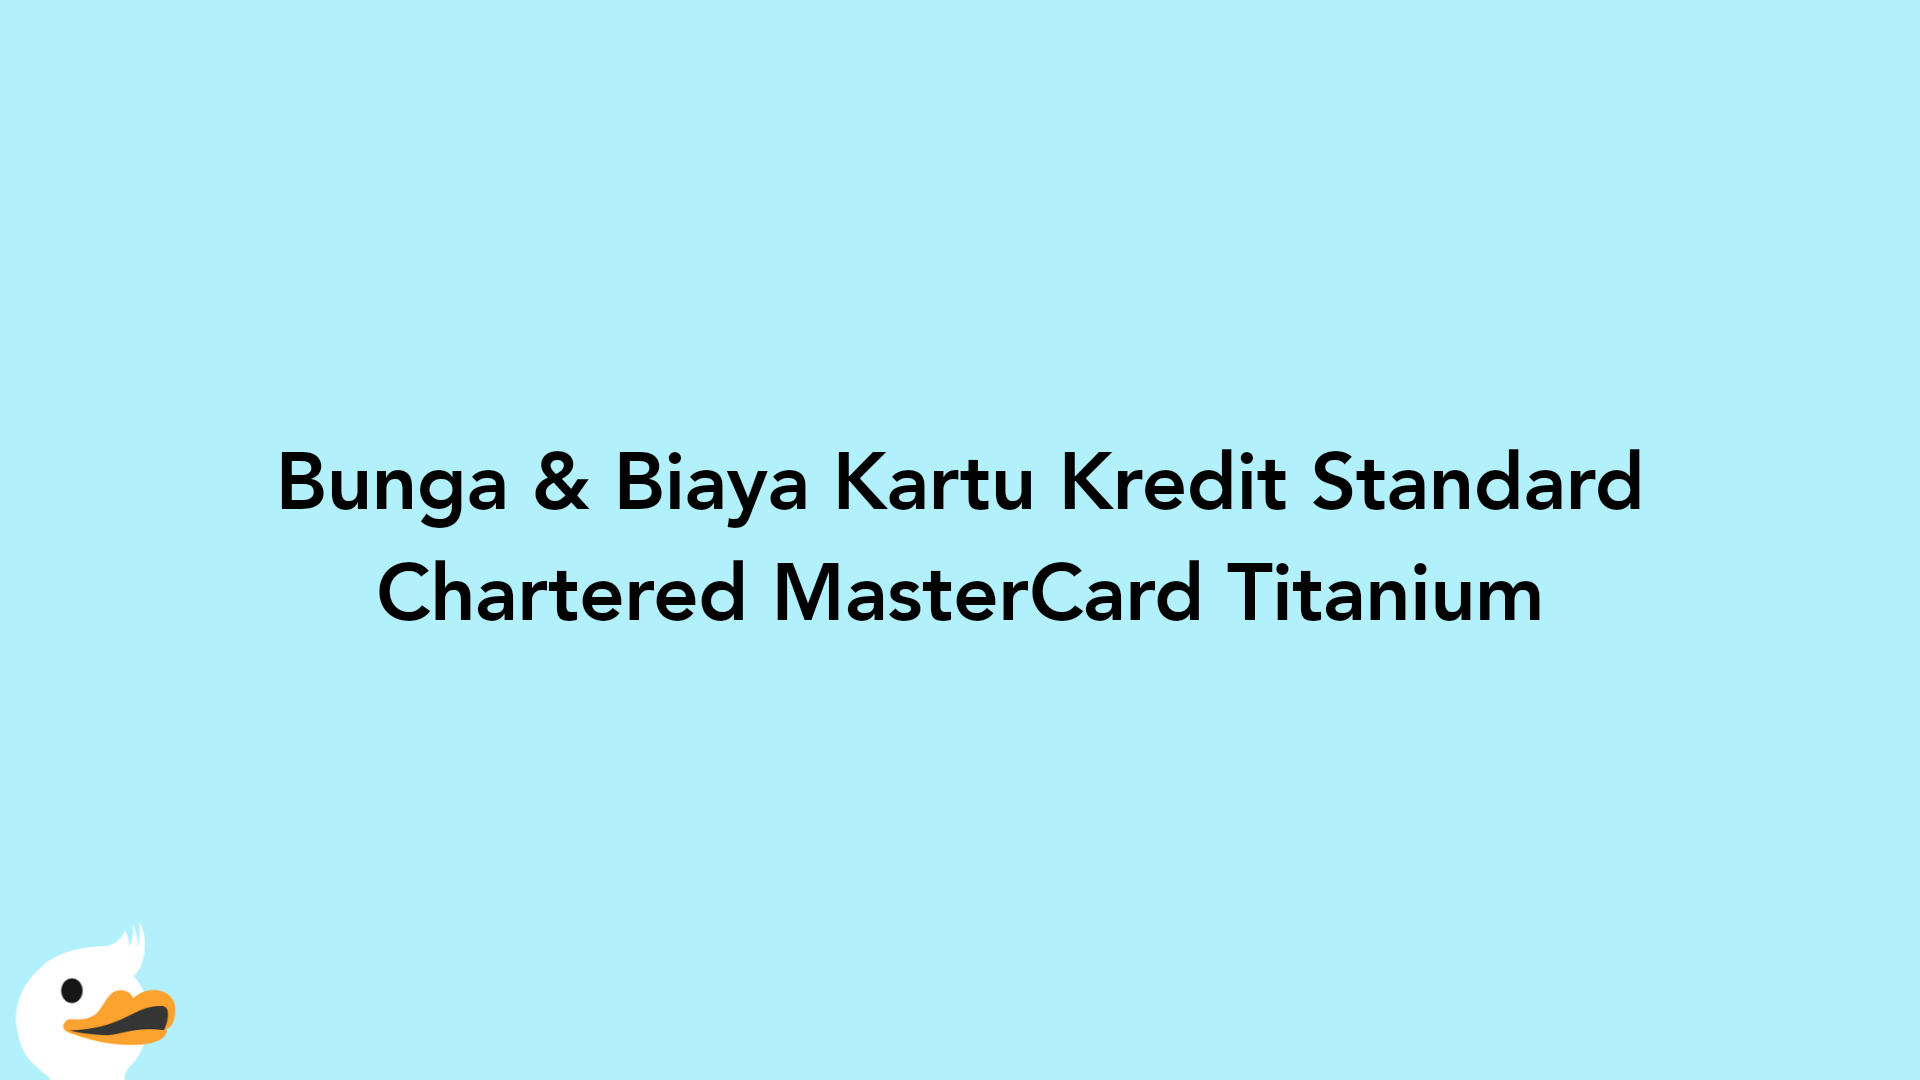 Bunga & Biaya Kartu Kredit Standard Chartered MasterCard Titanium